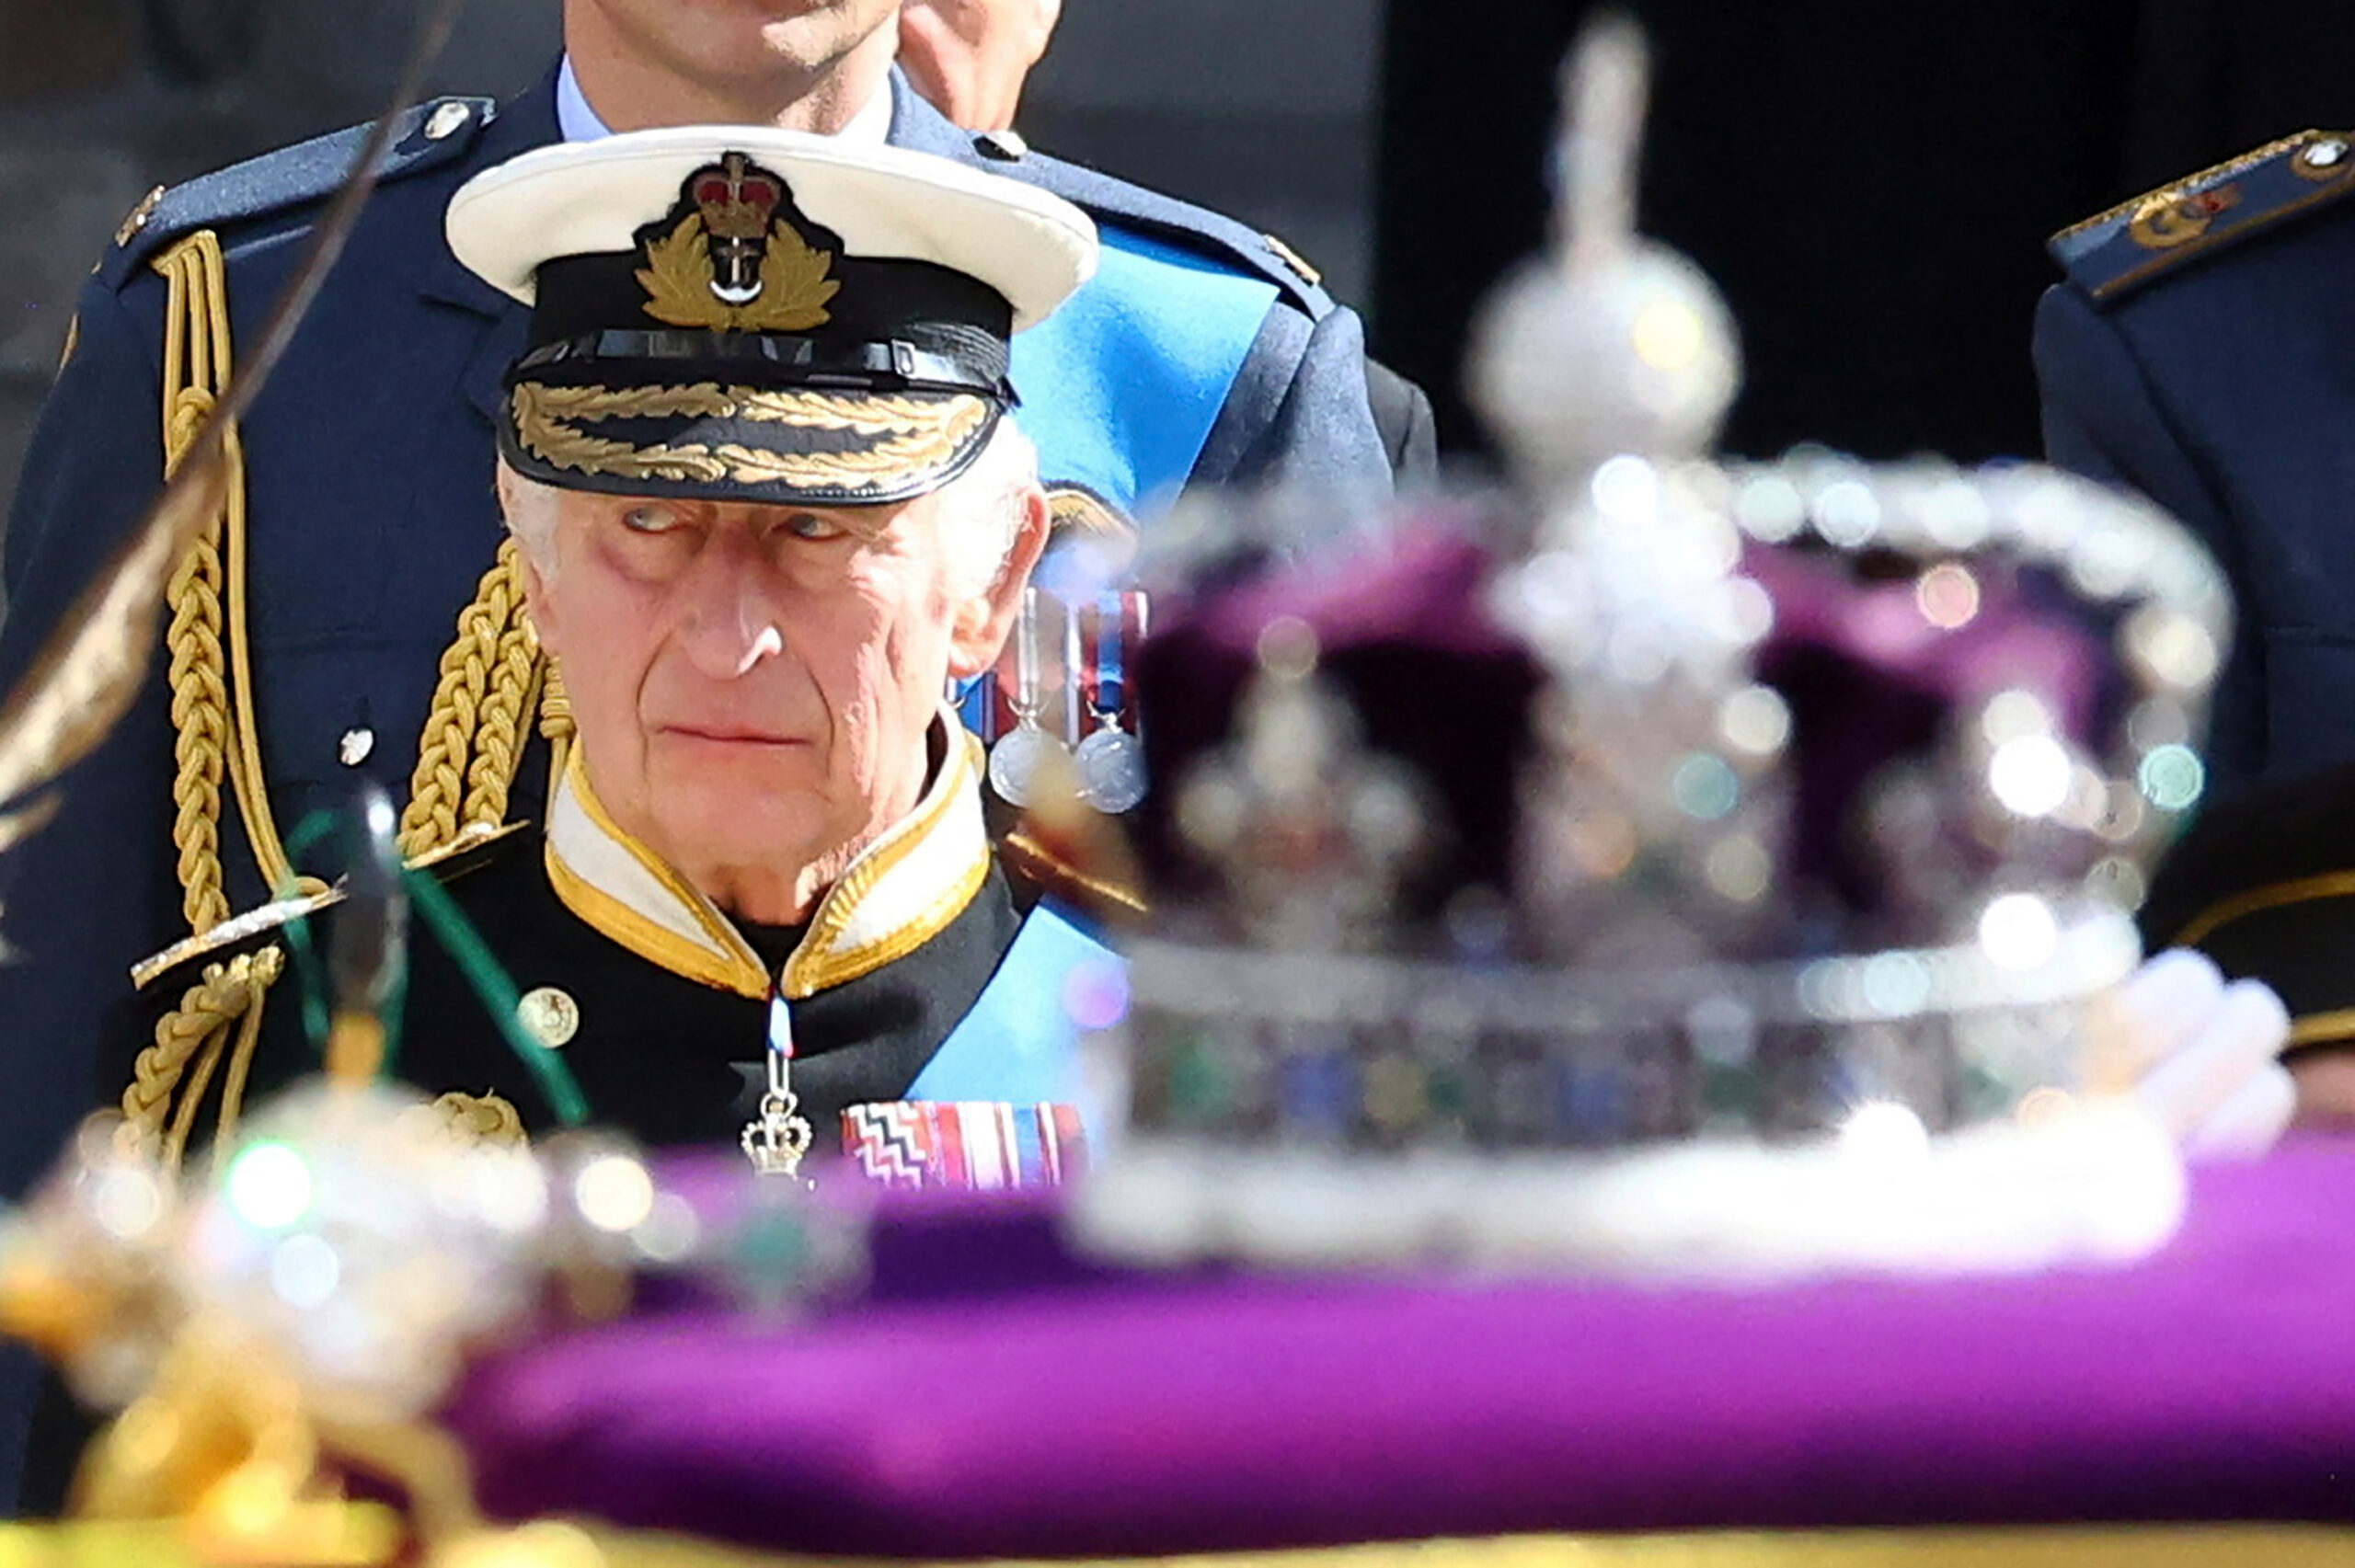 Charles steht hinter dem Sarg, auf dem eine lilafarbene Krone liegt